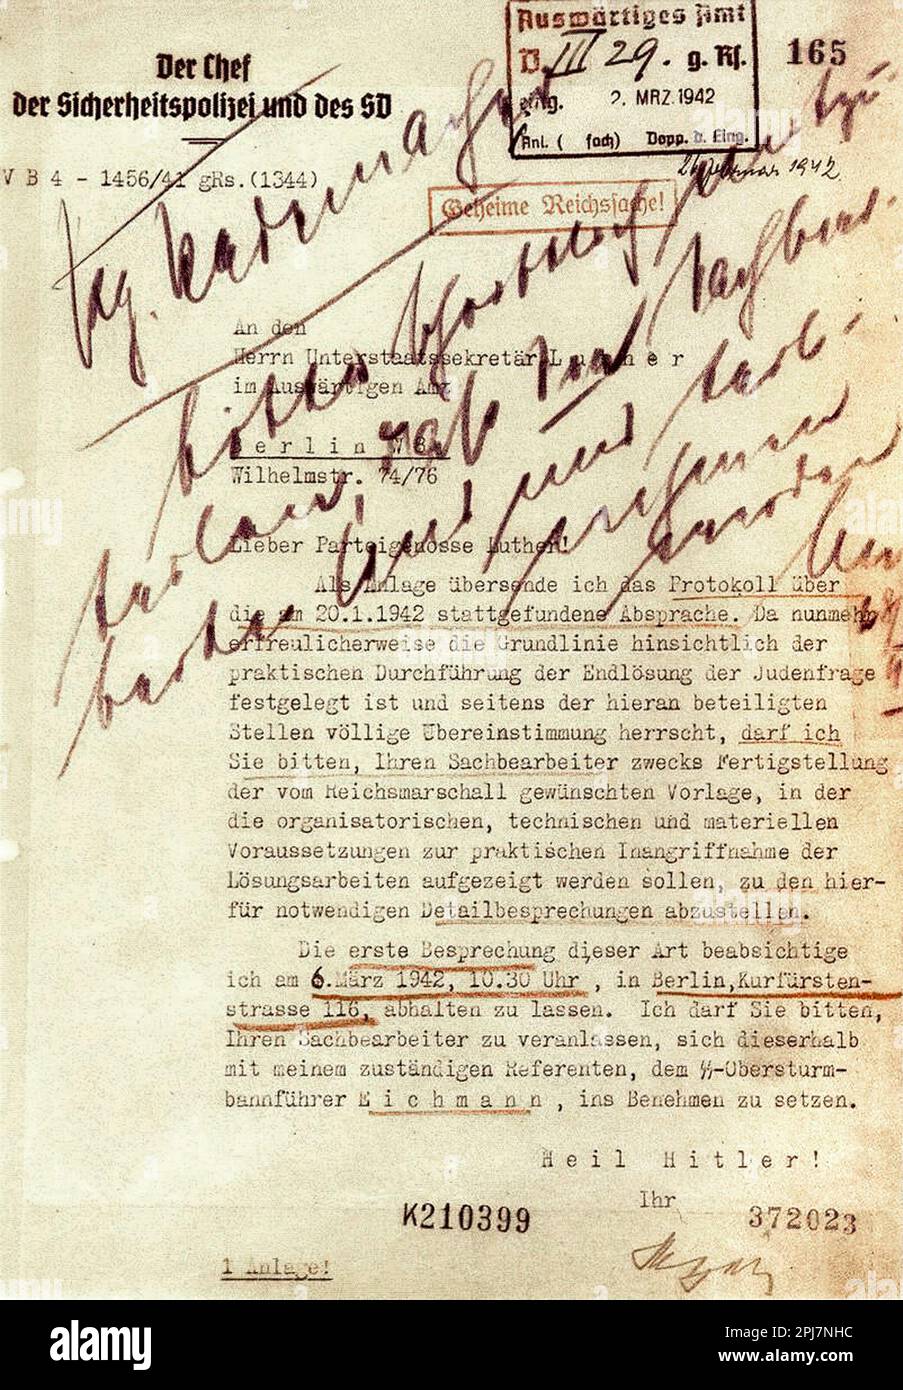 Ein Brief von Reinhard Heydrich nach der Wannsee-Konferenz, in dem er um Hilfe bei der endgültigen Lösung der jüdischen Frage bittet. Dieser schaurige Satz "Endlösung der Judenfrage" kann am Ende der vierten Zeile des Buchstabens gelesen werden. Stockfoto